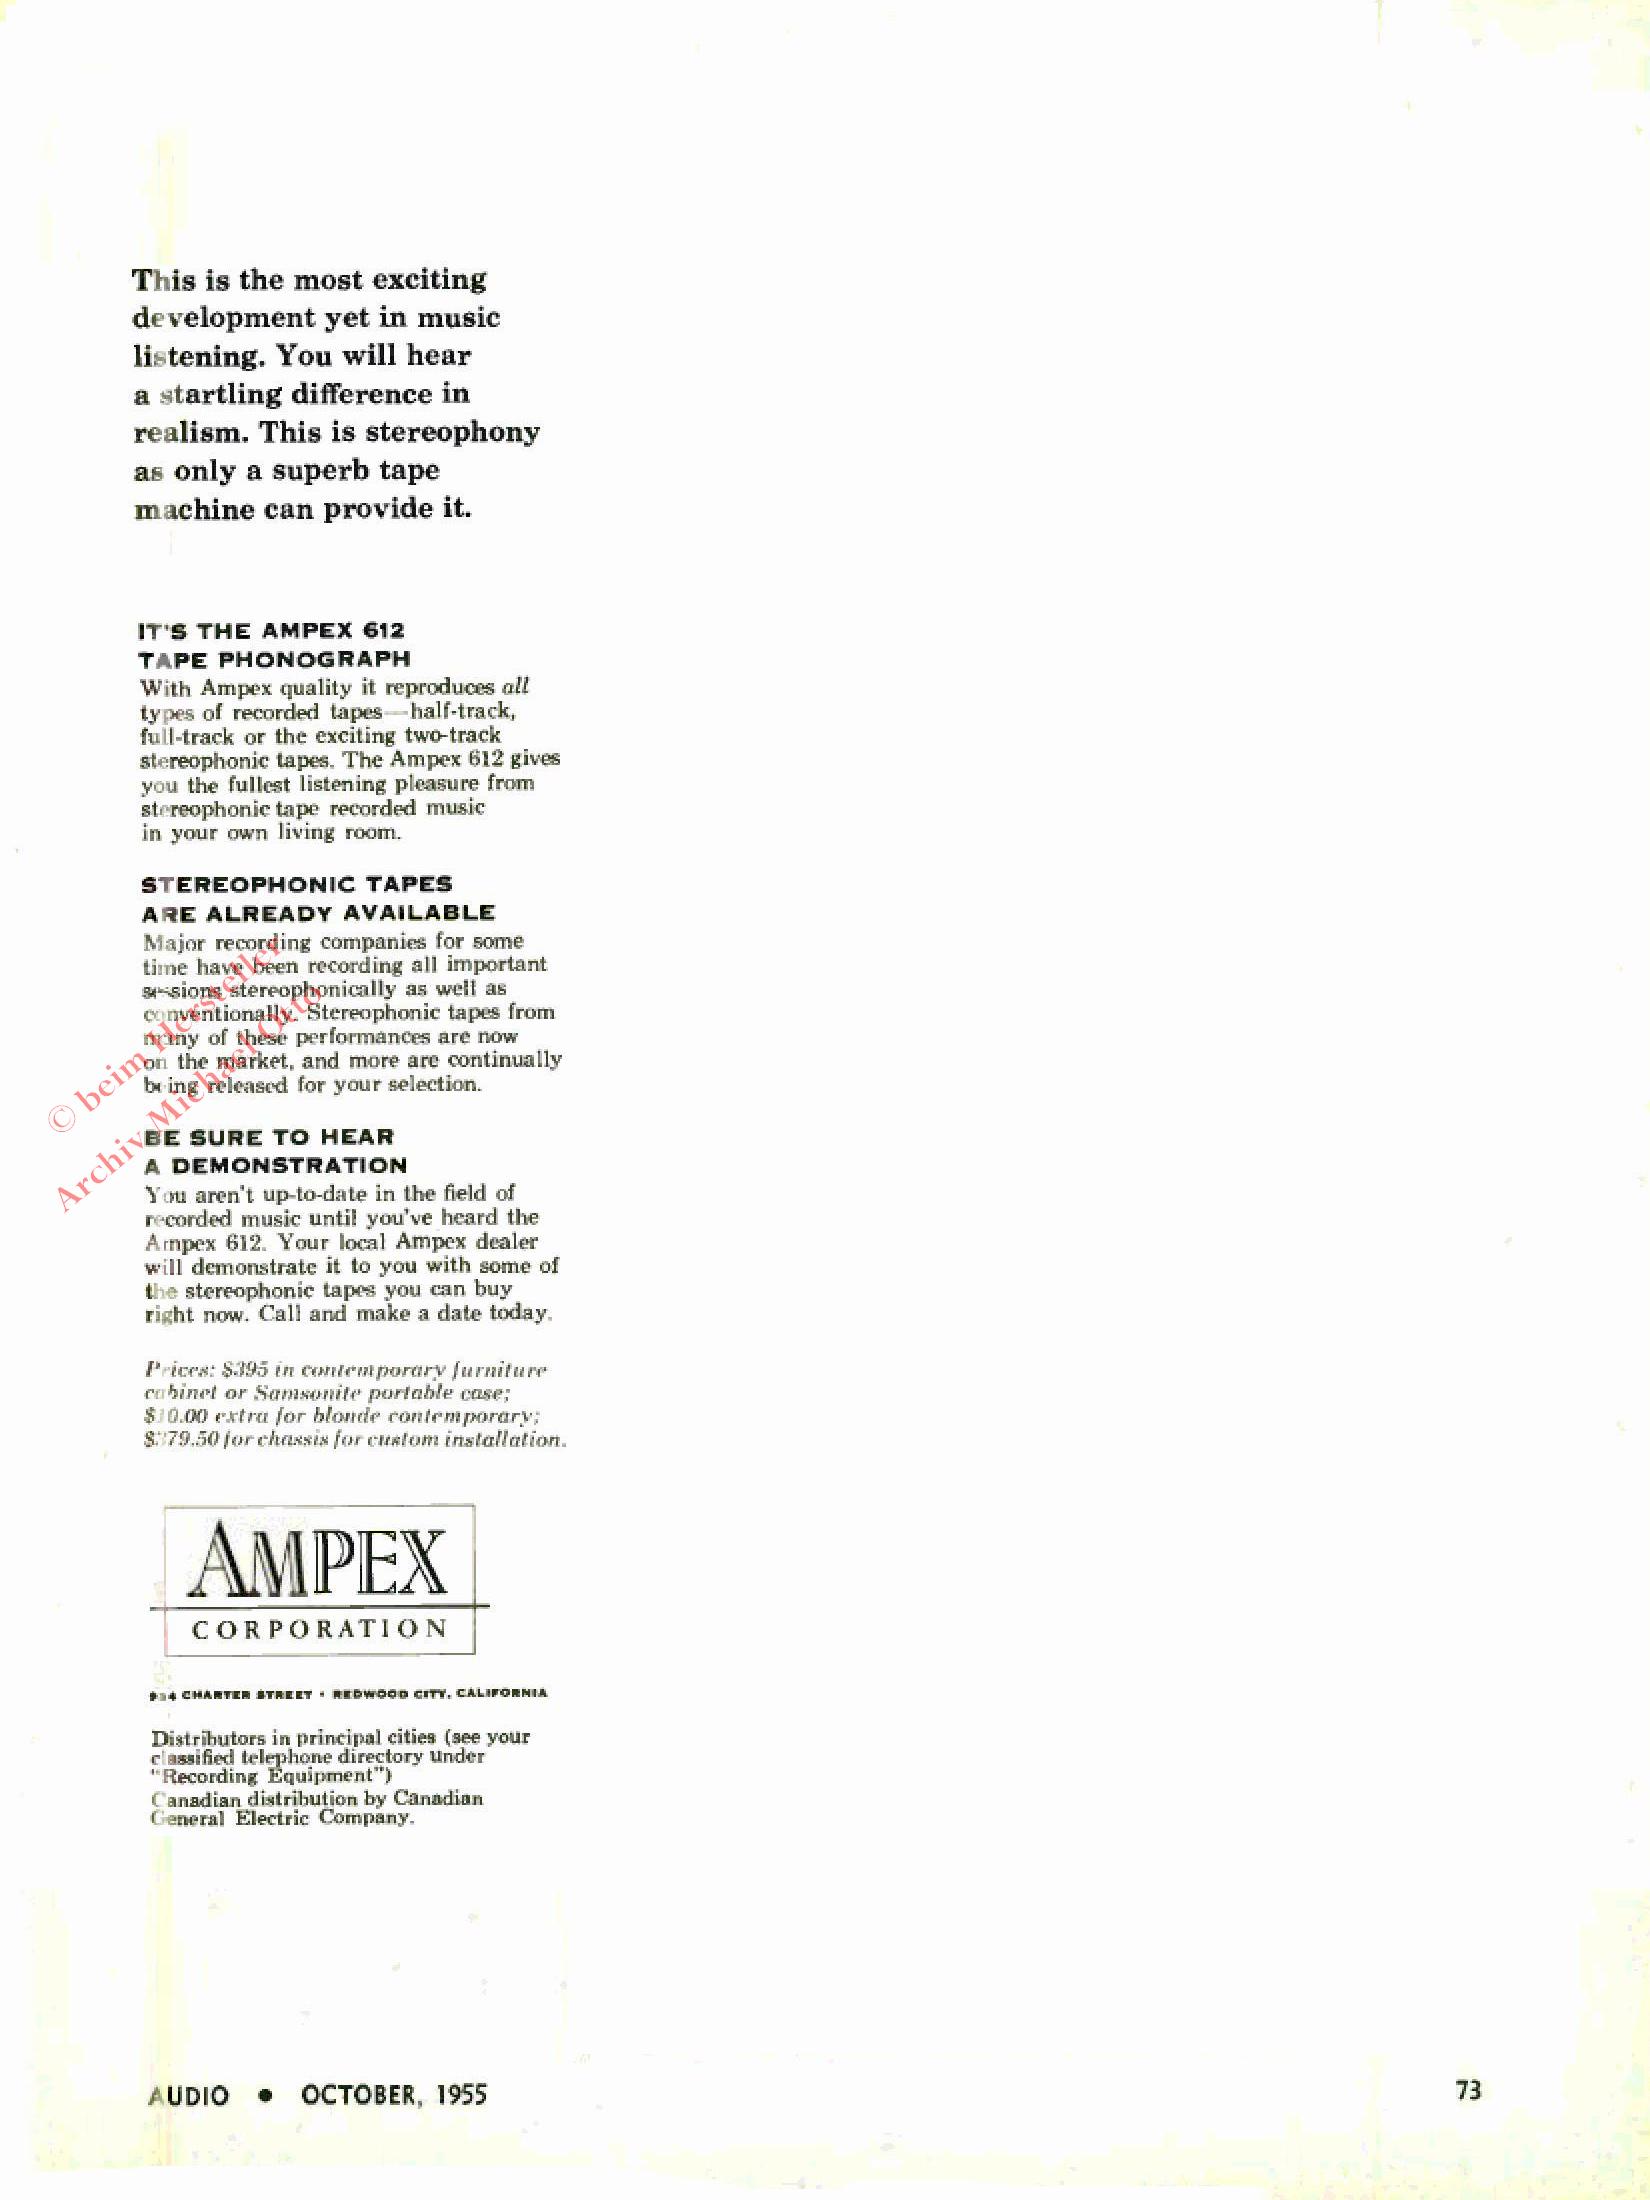 AMPEX_WERBUNG (48).jpg